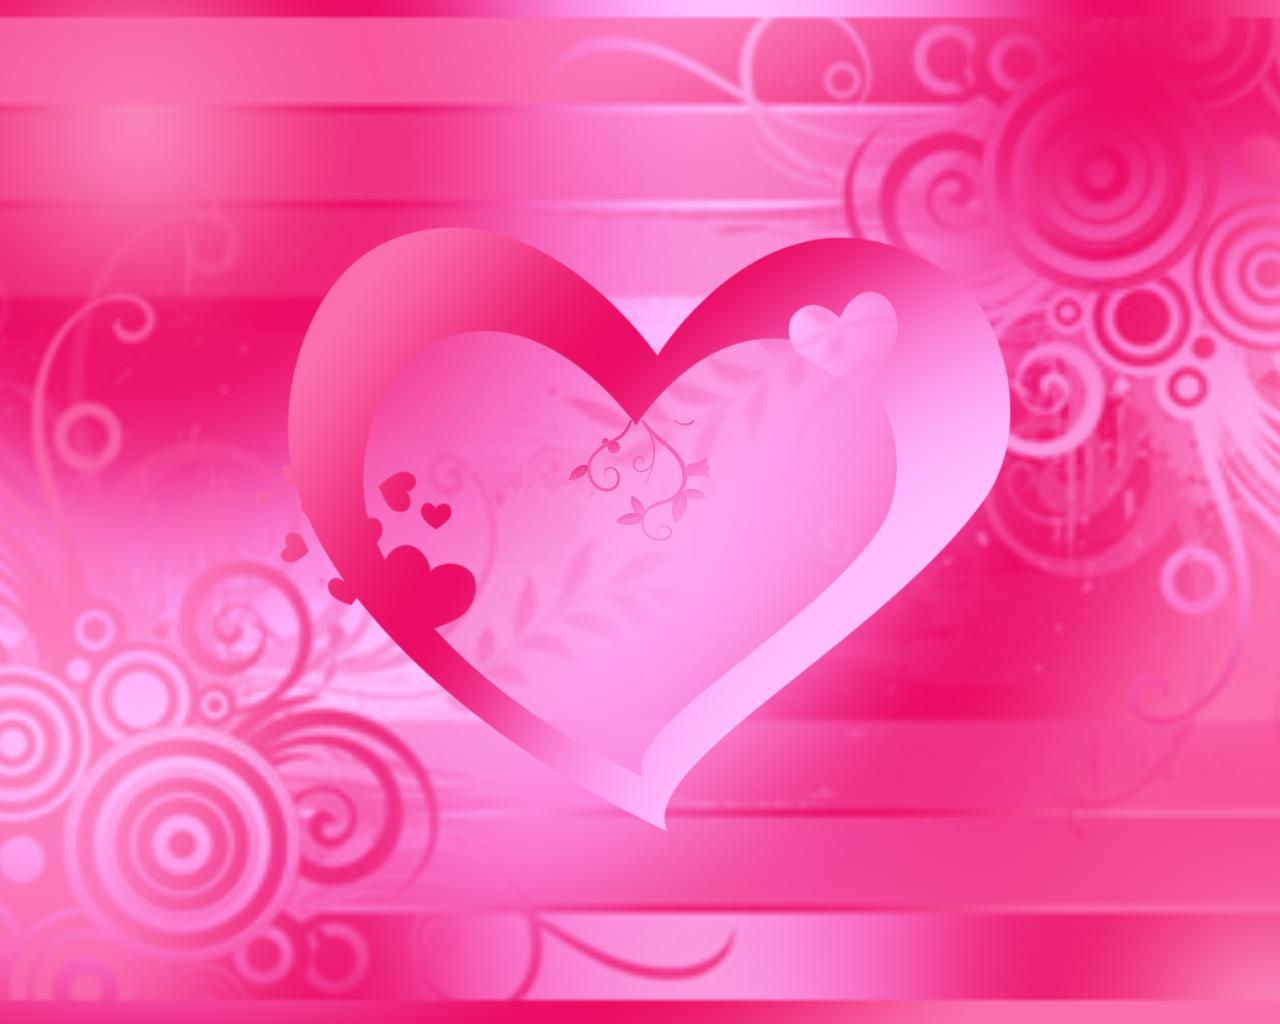 Pink heart wallpaper by CJtdfan2020 on DeviantArt